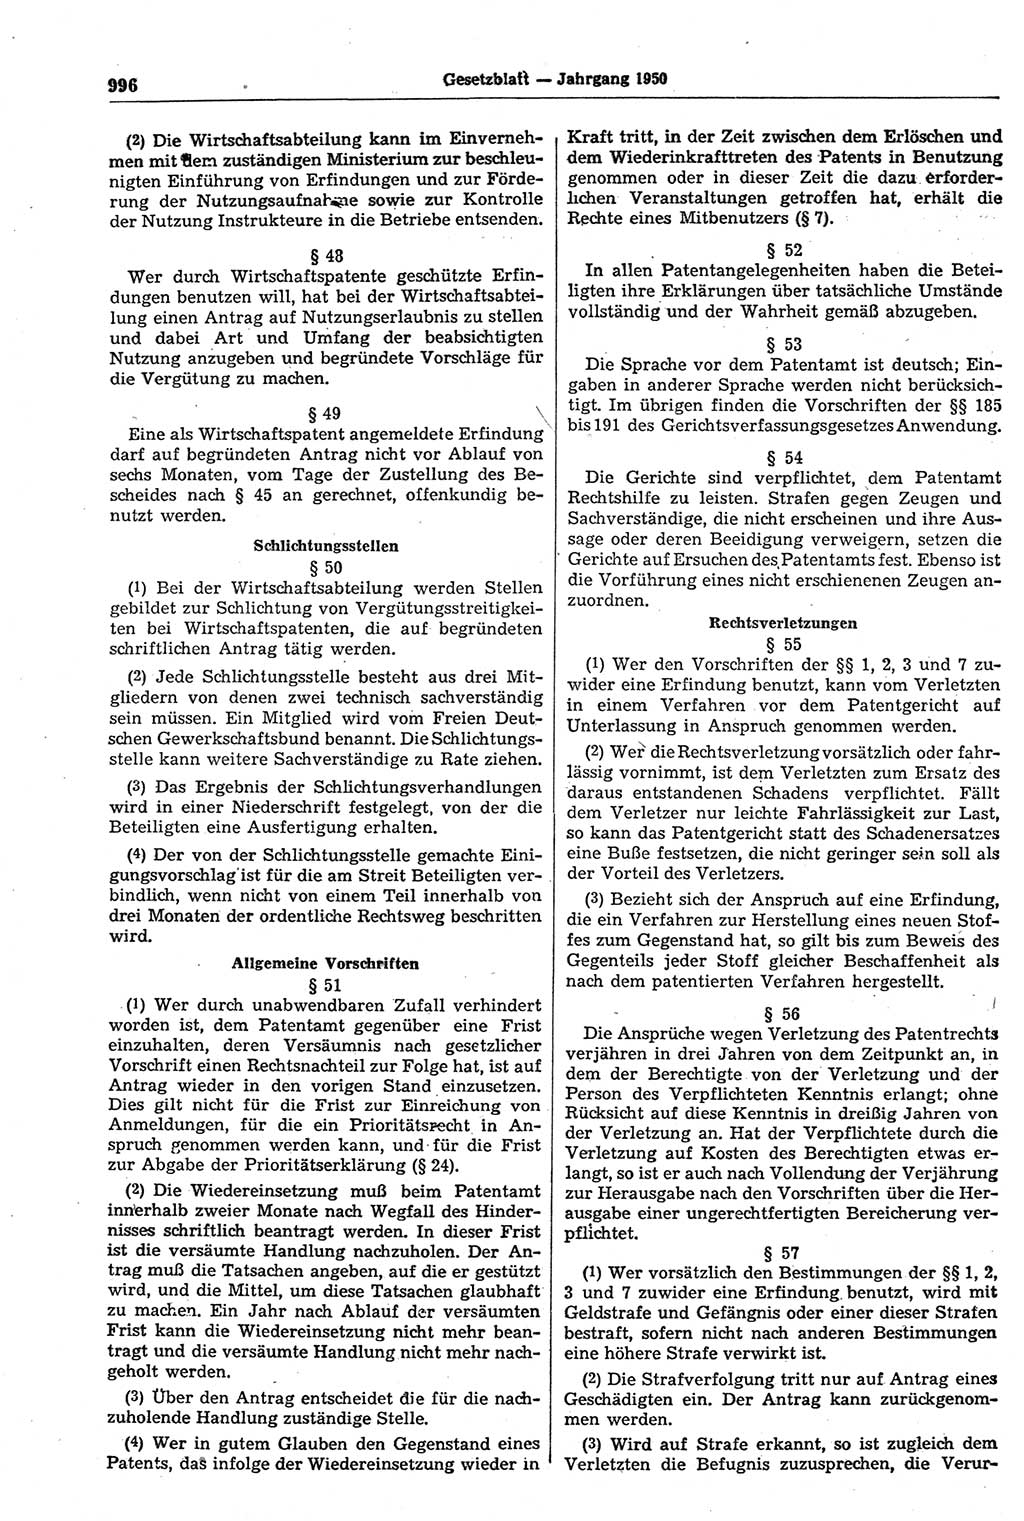 Gesetzblatt (GBl.) der Deutschen Demokratischen Republik (DDR) 1950, Seite 996 (GBl. DDR 1950, S. 996)